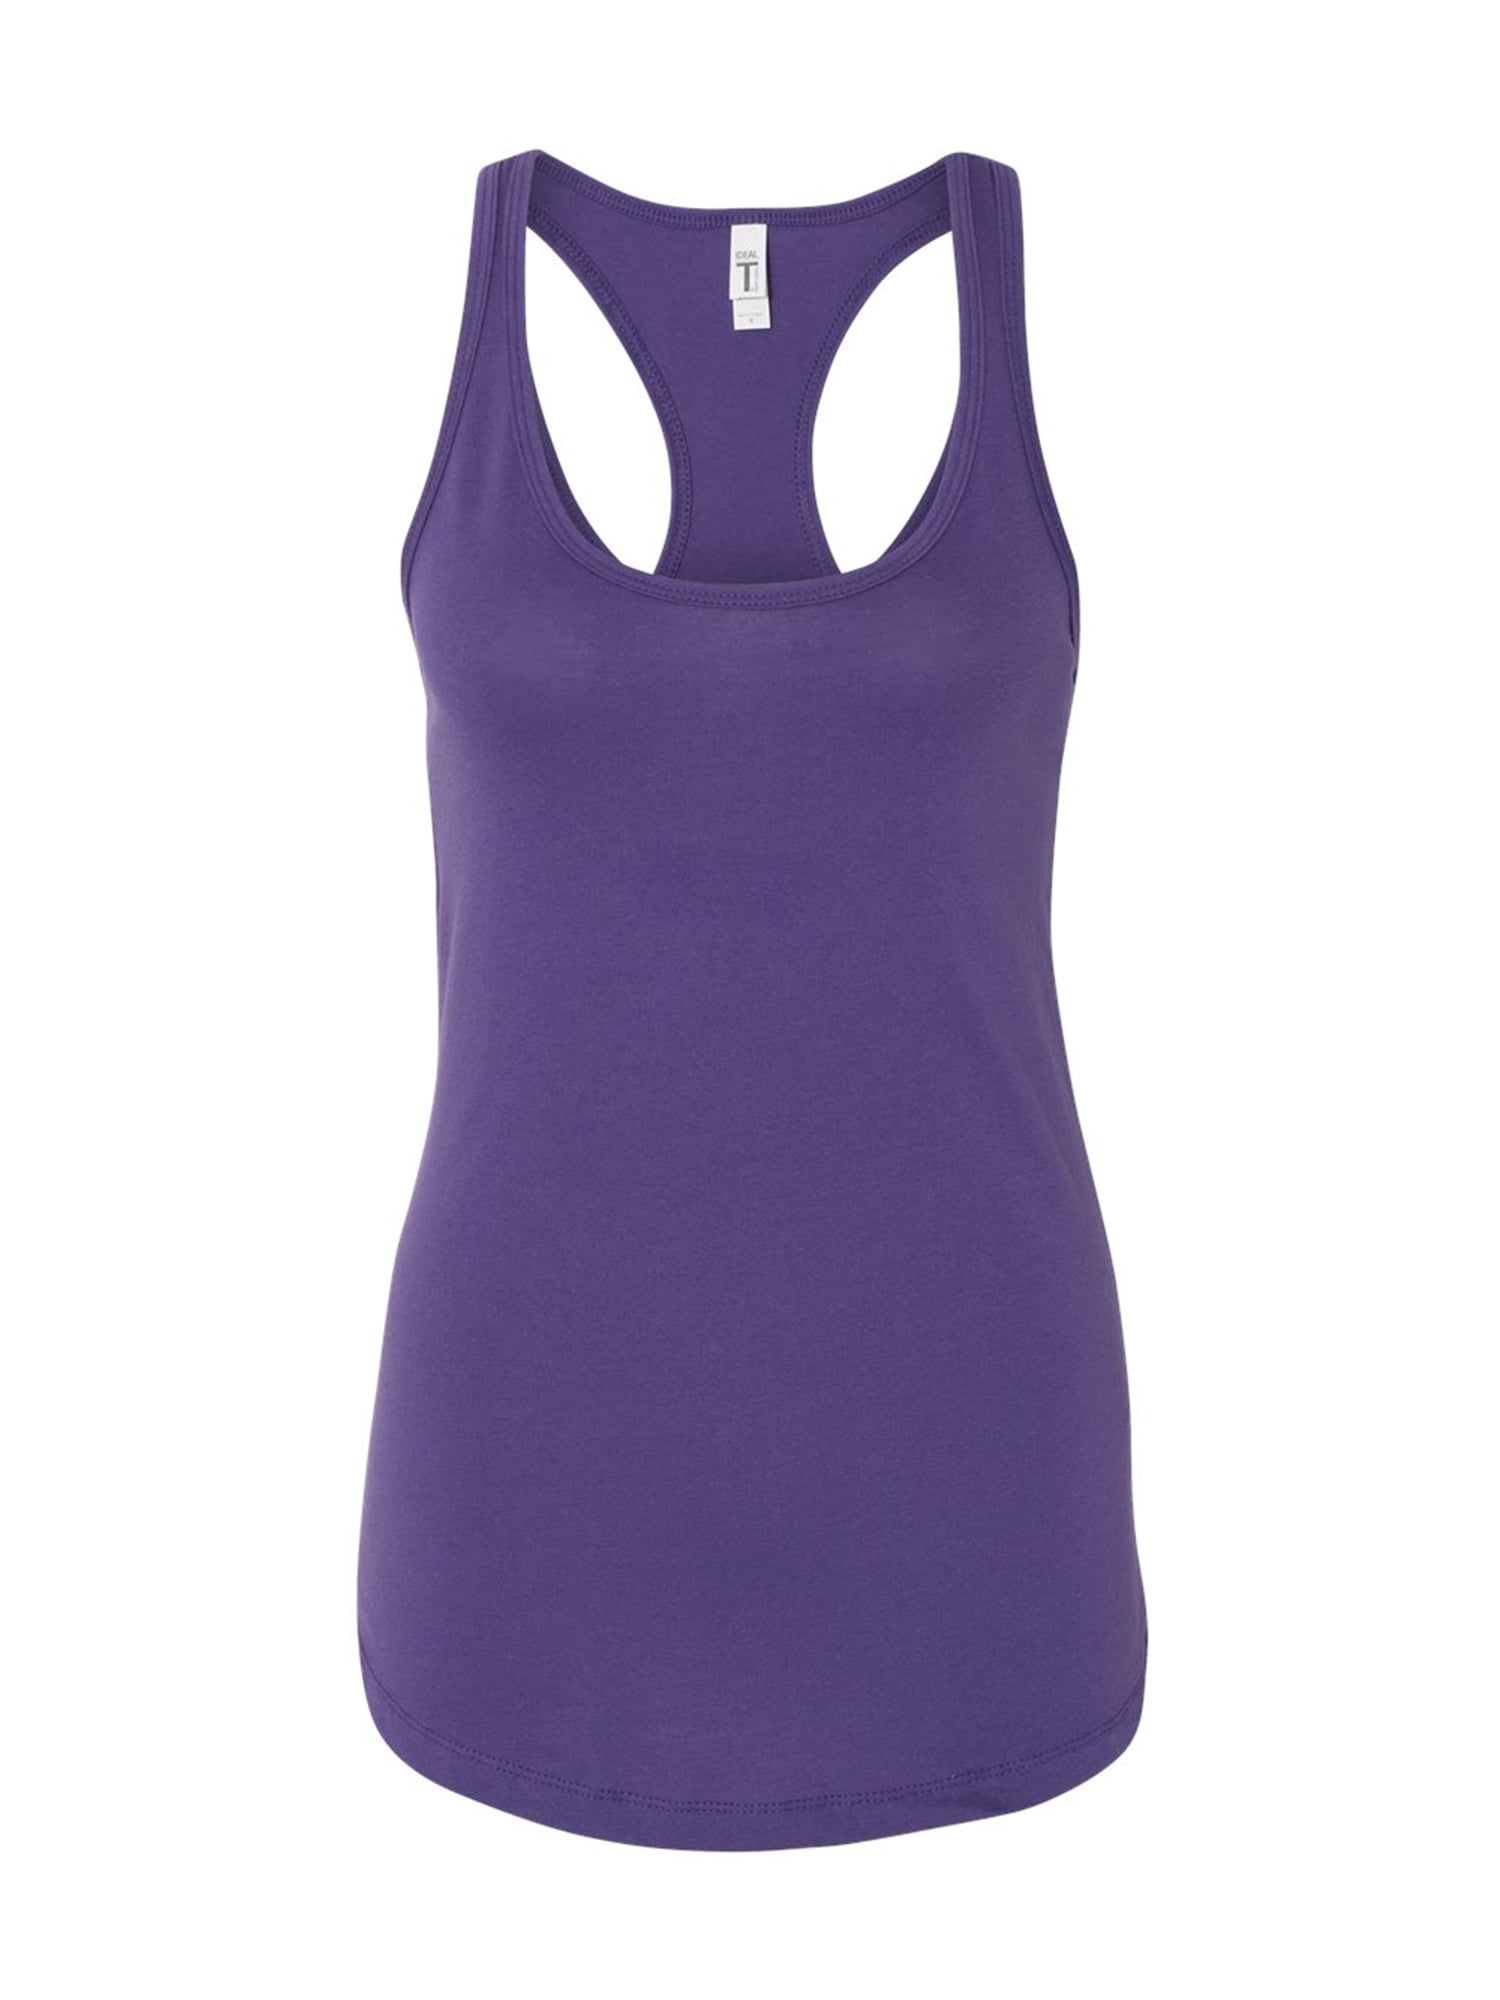 Purple Fitness Yoga Sports Bra, Push up Workout Bra, Workout